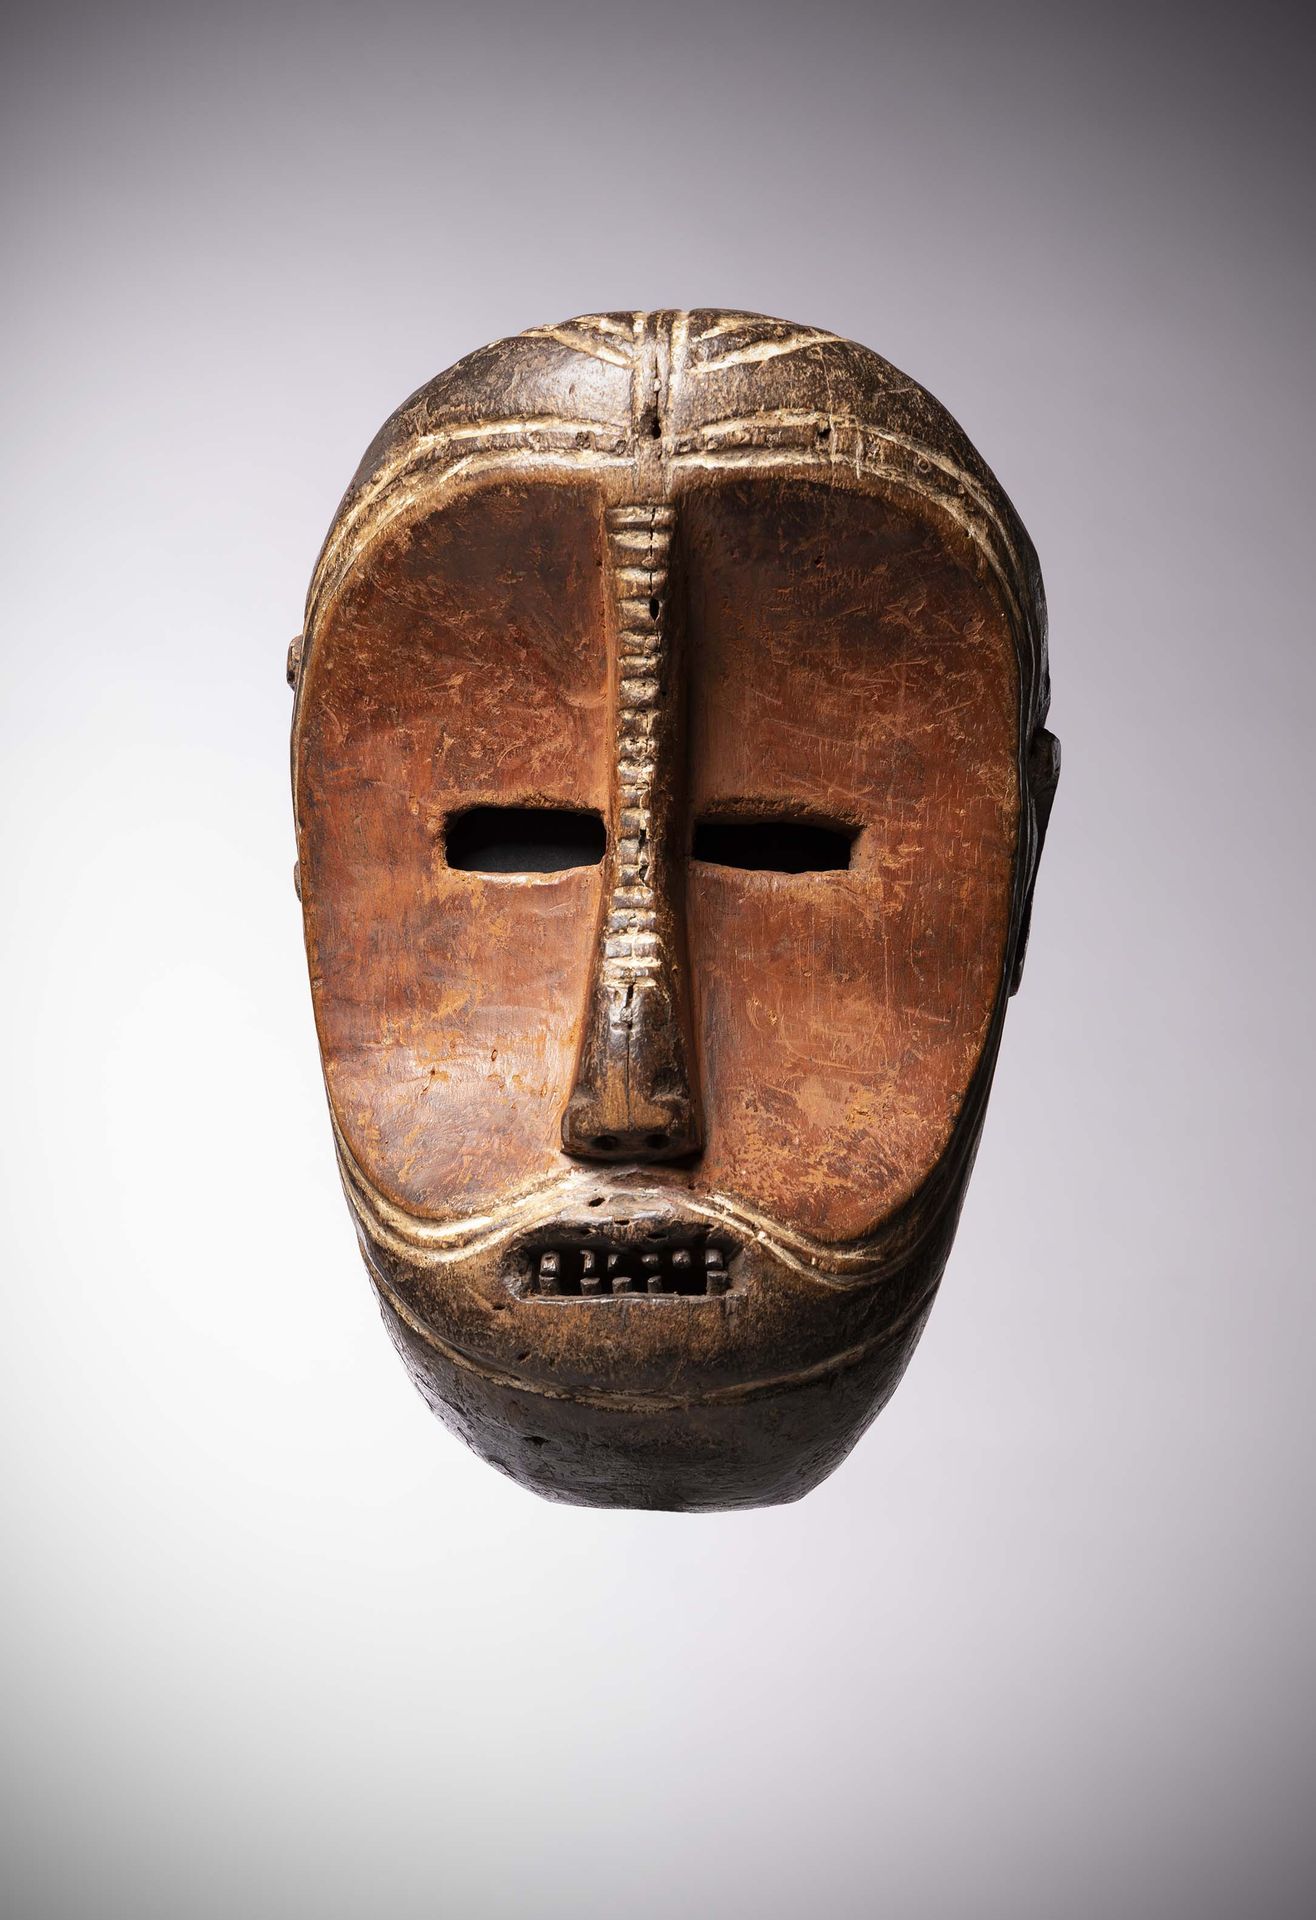 Null Bwaka

(刚果民主共和国)非常古老的面具，凹陷的脸部涂有红赭石ngula，下面有两条刻线，令人想起部落的疤痕。

鼻子上也有这个区域特有的切口标&hellip;